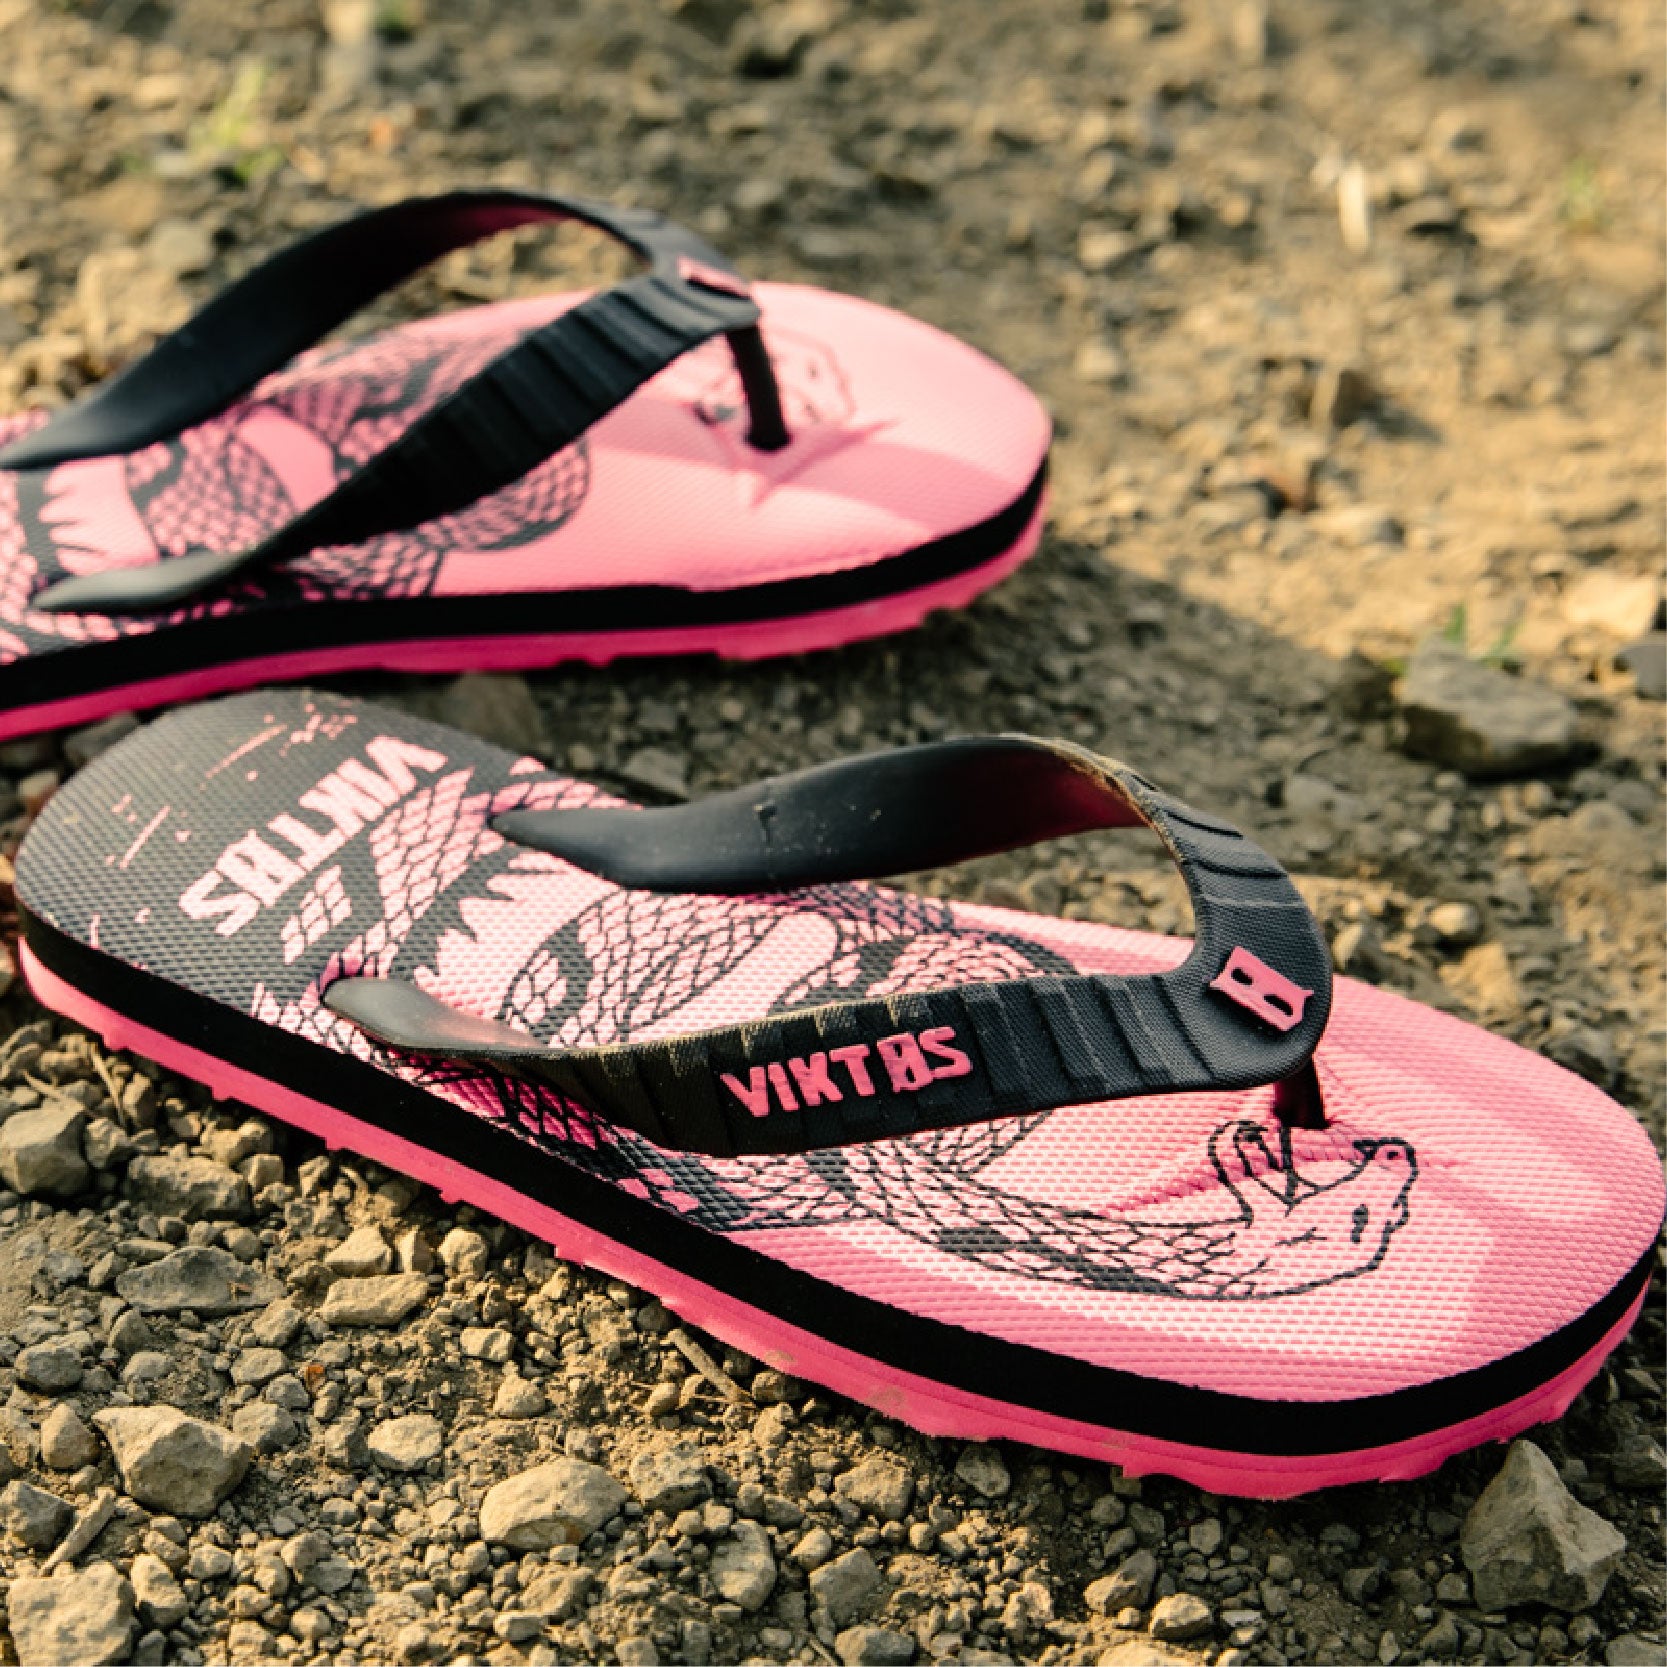 VIKTOS Women's Chuville Treadnaught Sandal [Pink]